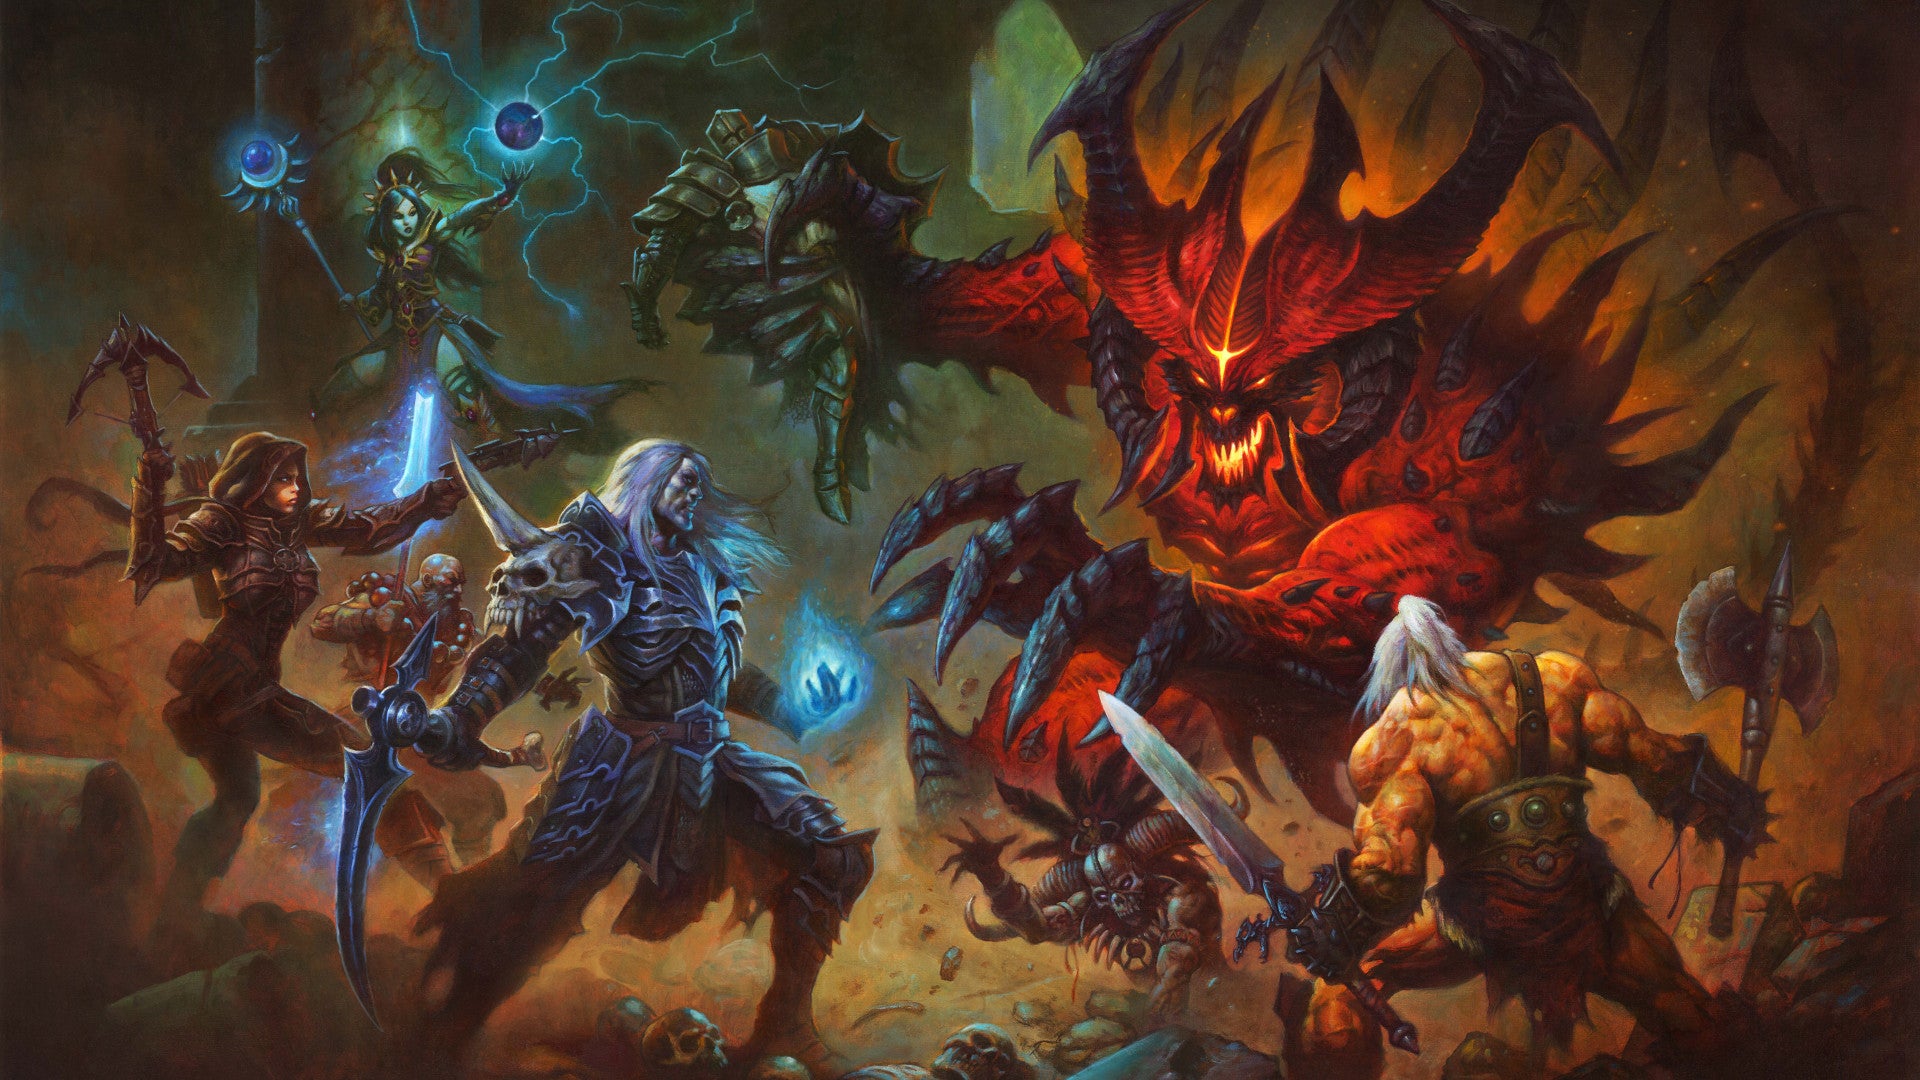 Bilder zu Diablo 3 sollte ursprünglich ein MMO werden - Ex-Blizzard-Entwickler plaudert aus dem Nähkästchen